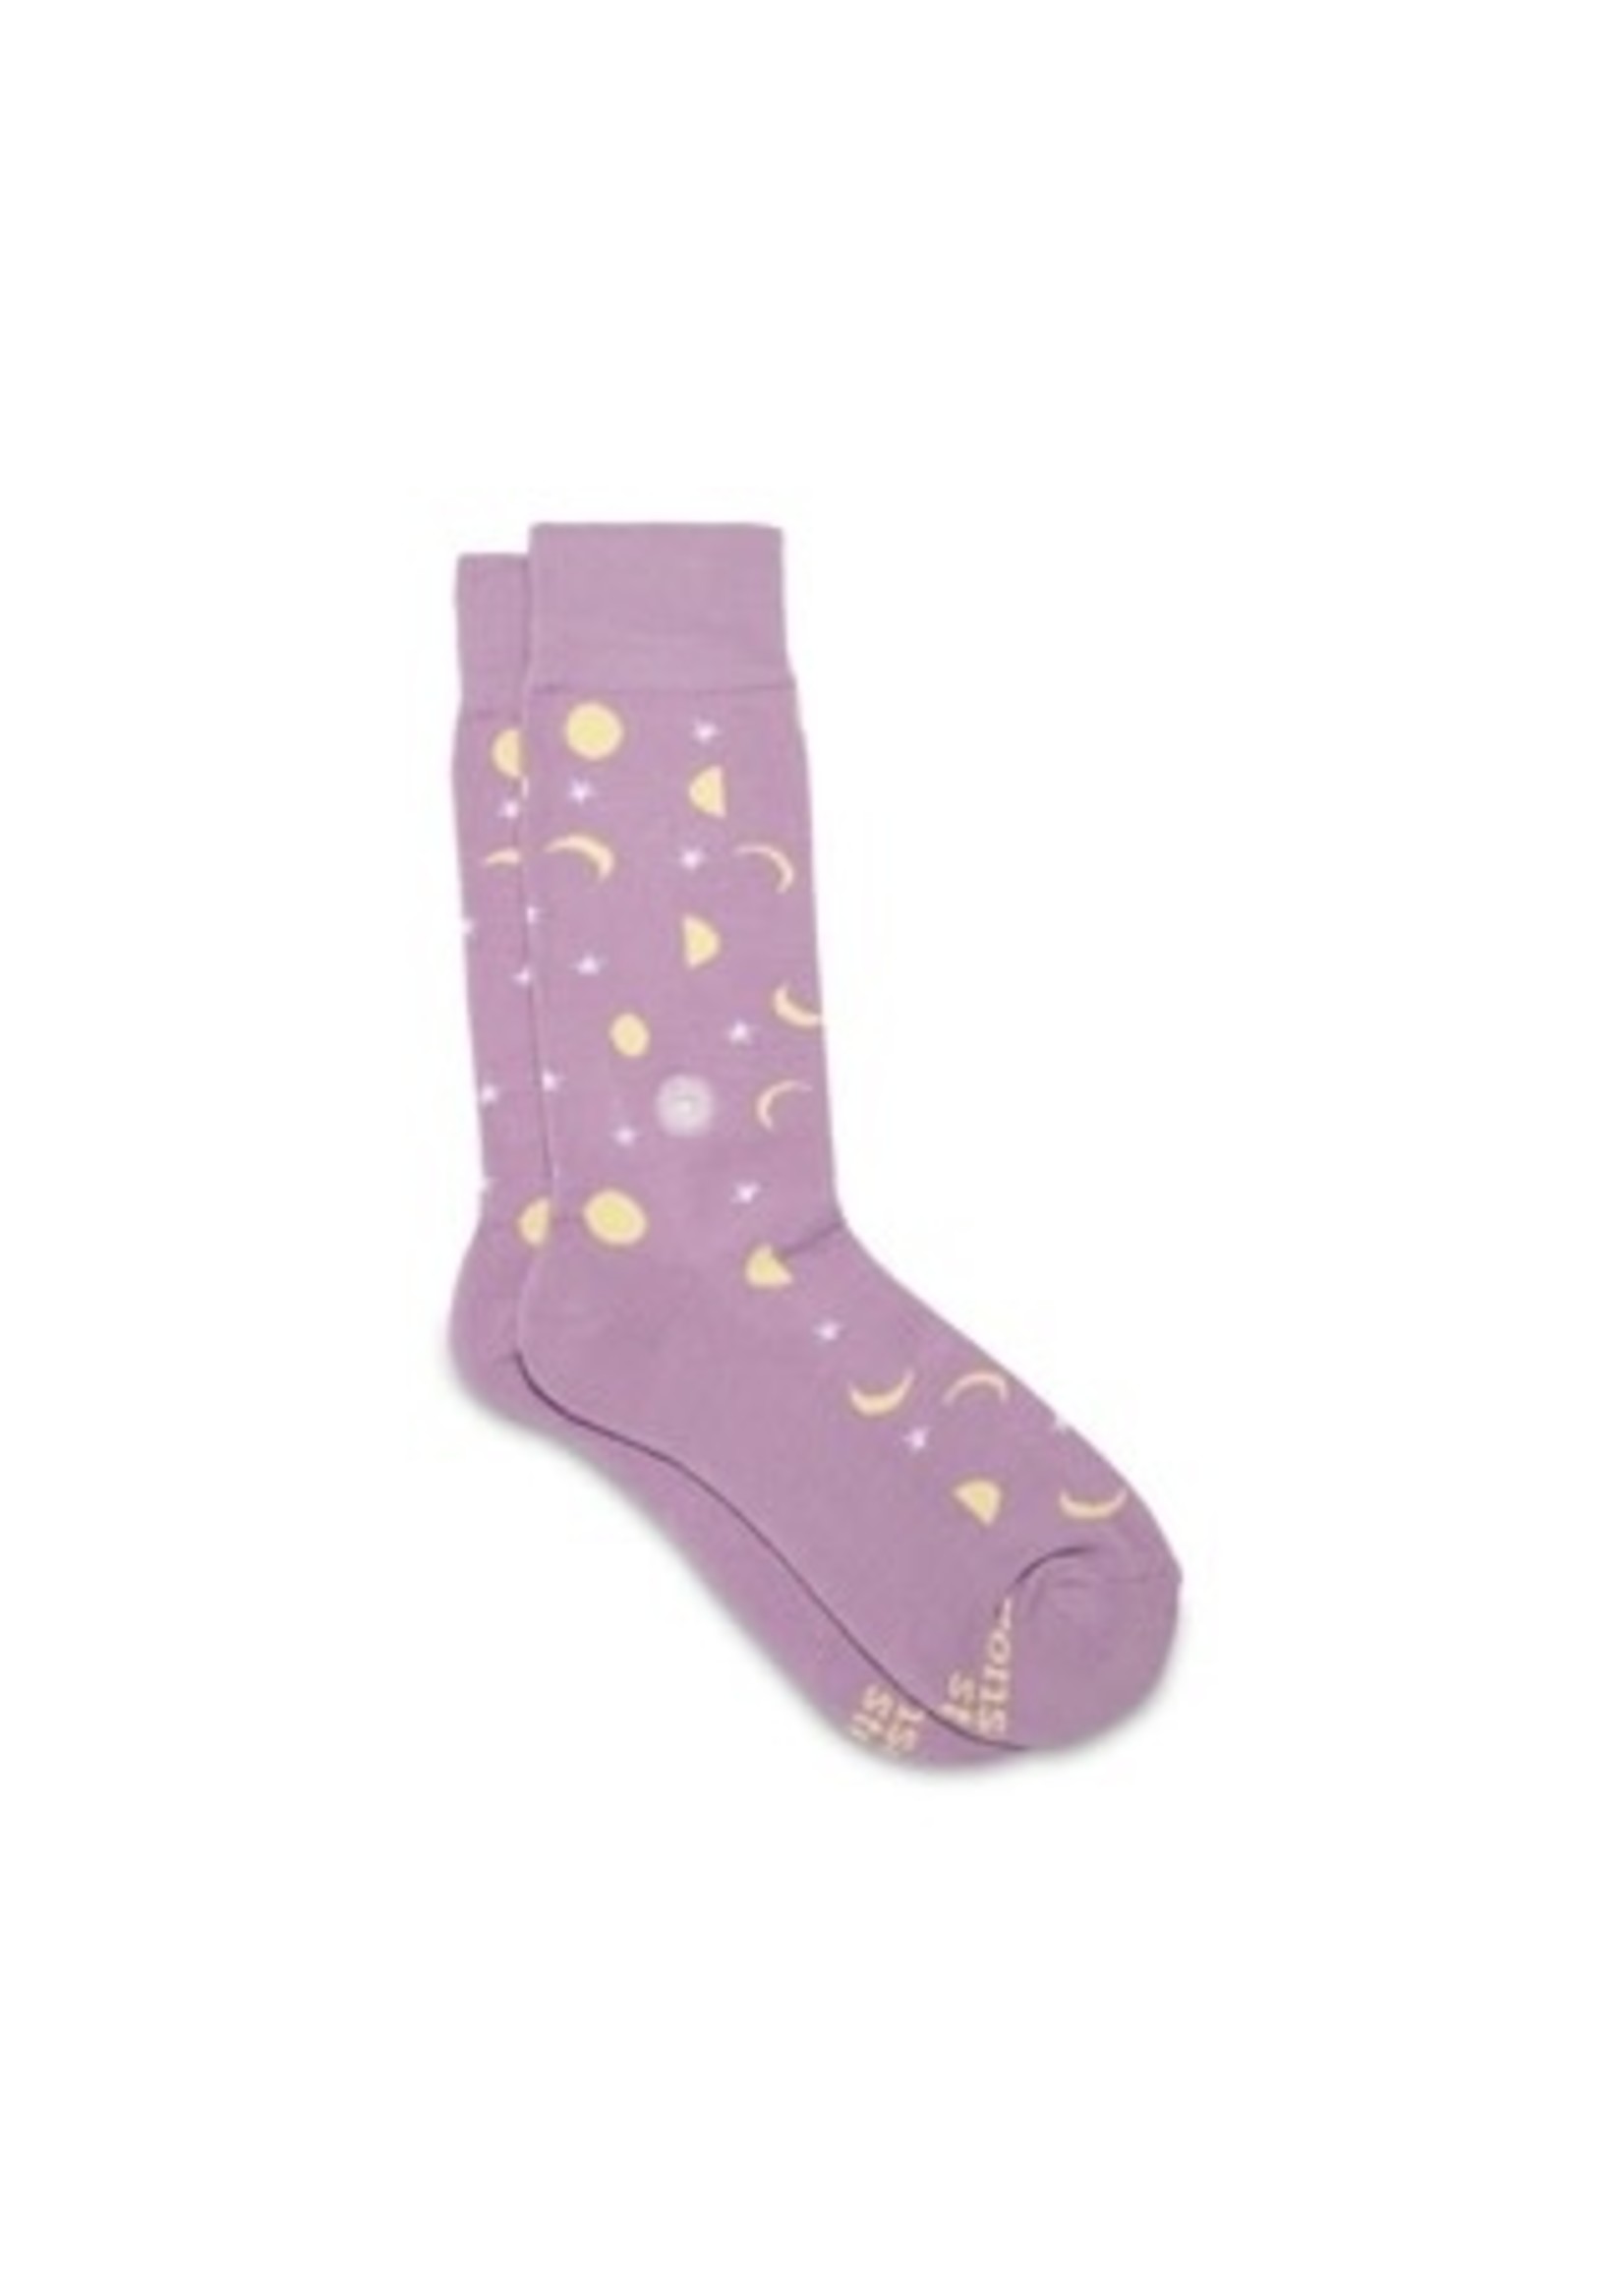 Socks - Support Mental Health Lavender Celestial